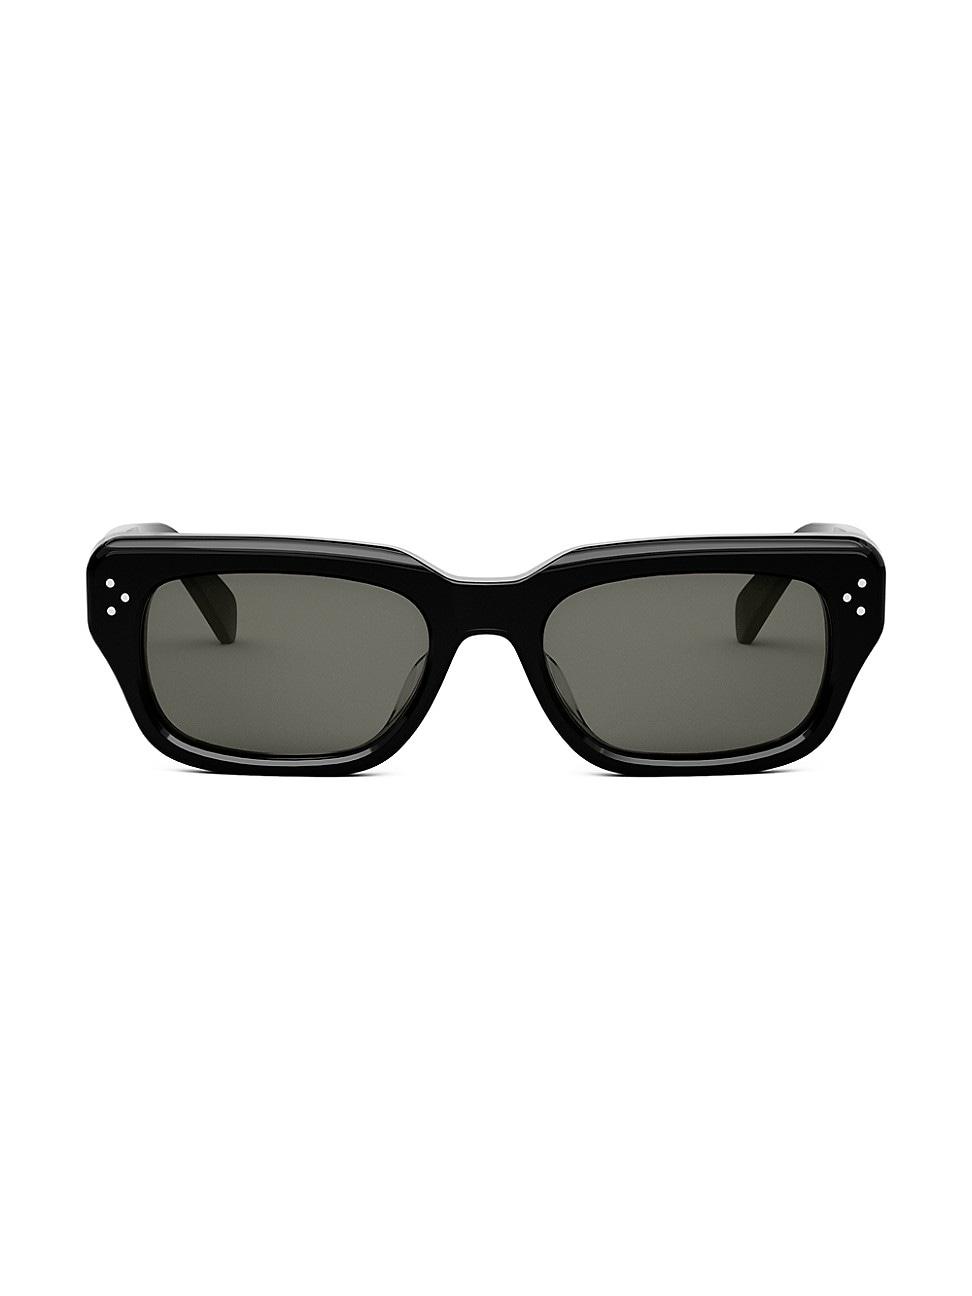 Celine Bold 54mm Rectangular Sunglasses in Black | Lyst